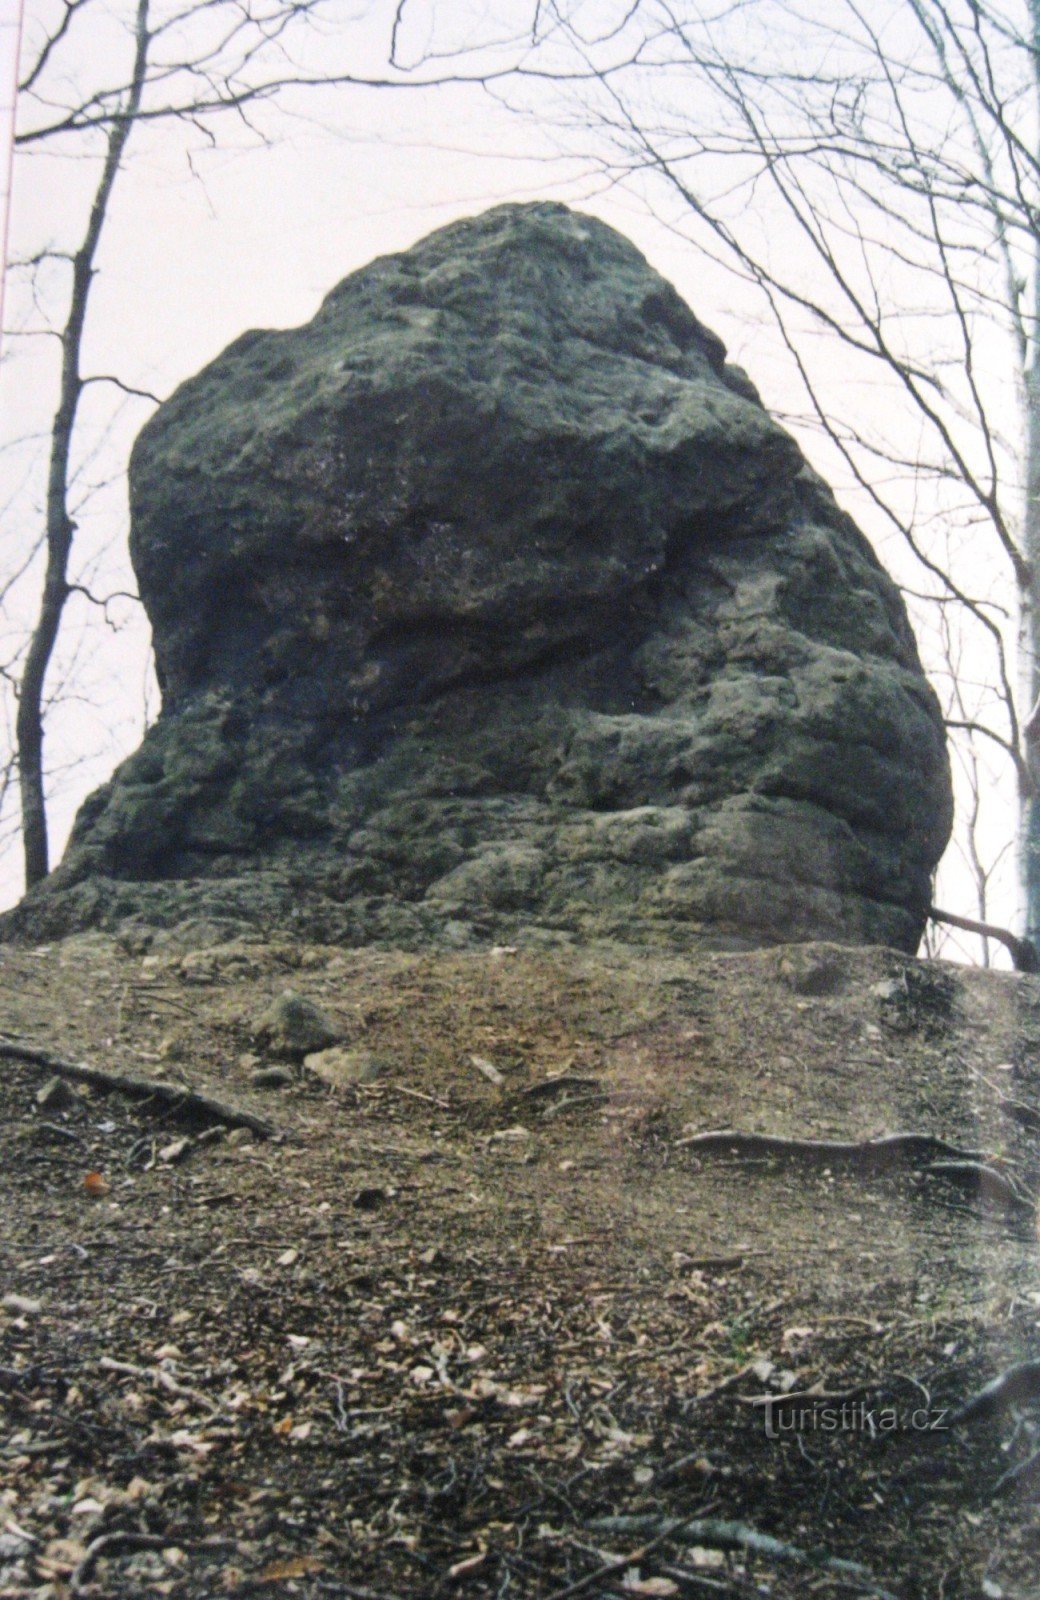 Rocks of Hostýnské vrchy - 5. Castle